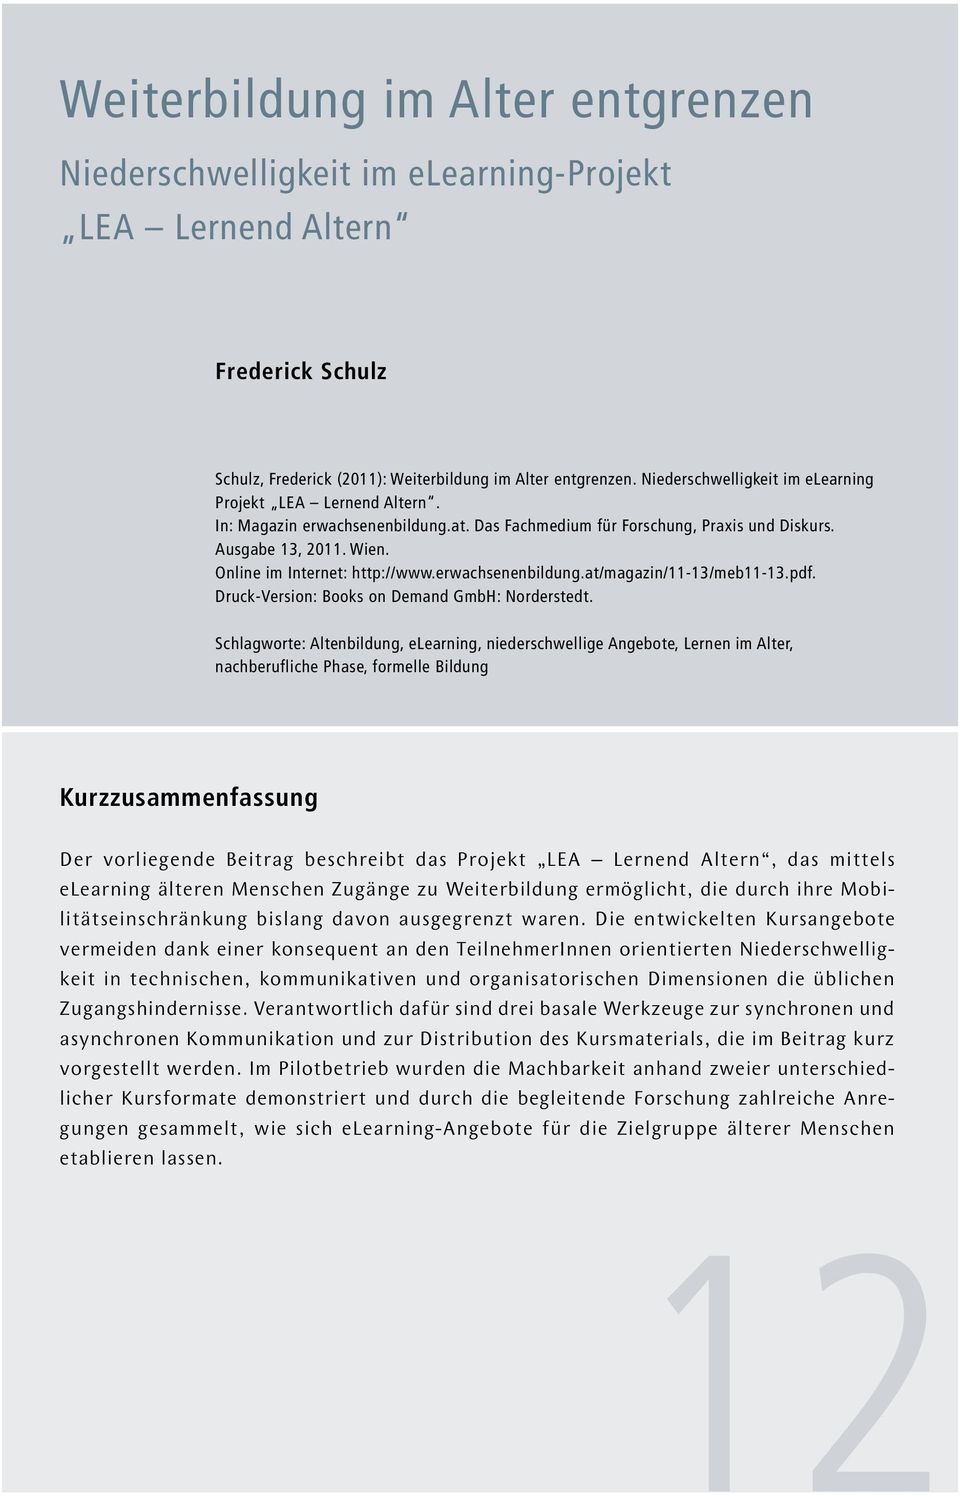 Online im Internet: http://www.erwachsenenbildung.at/magazin/11-13/meb11-13.pdf. Druck-Version: Books on Demand GmbH: Norderstedt.